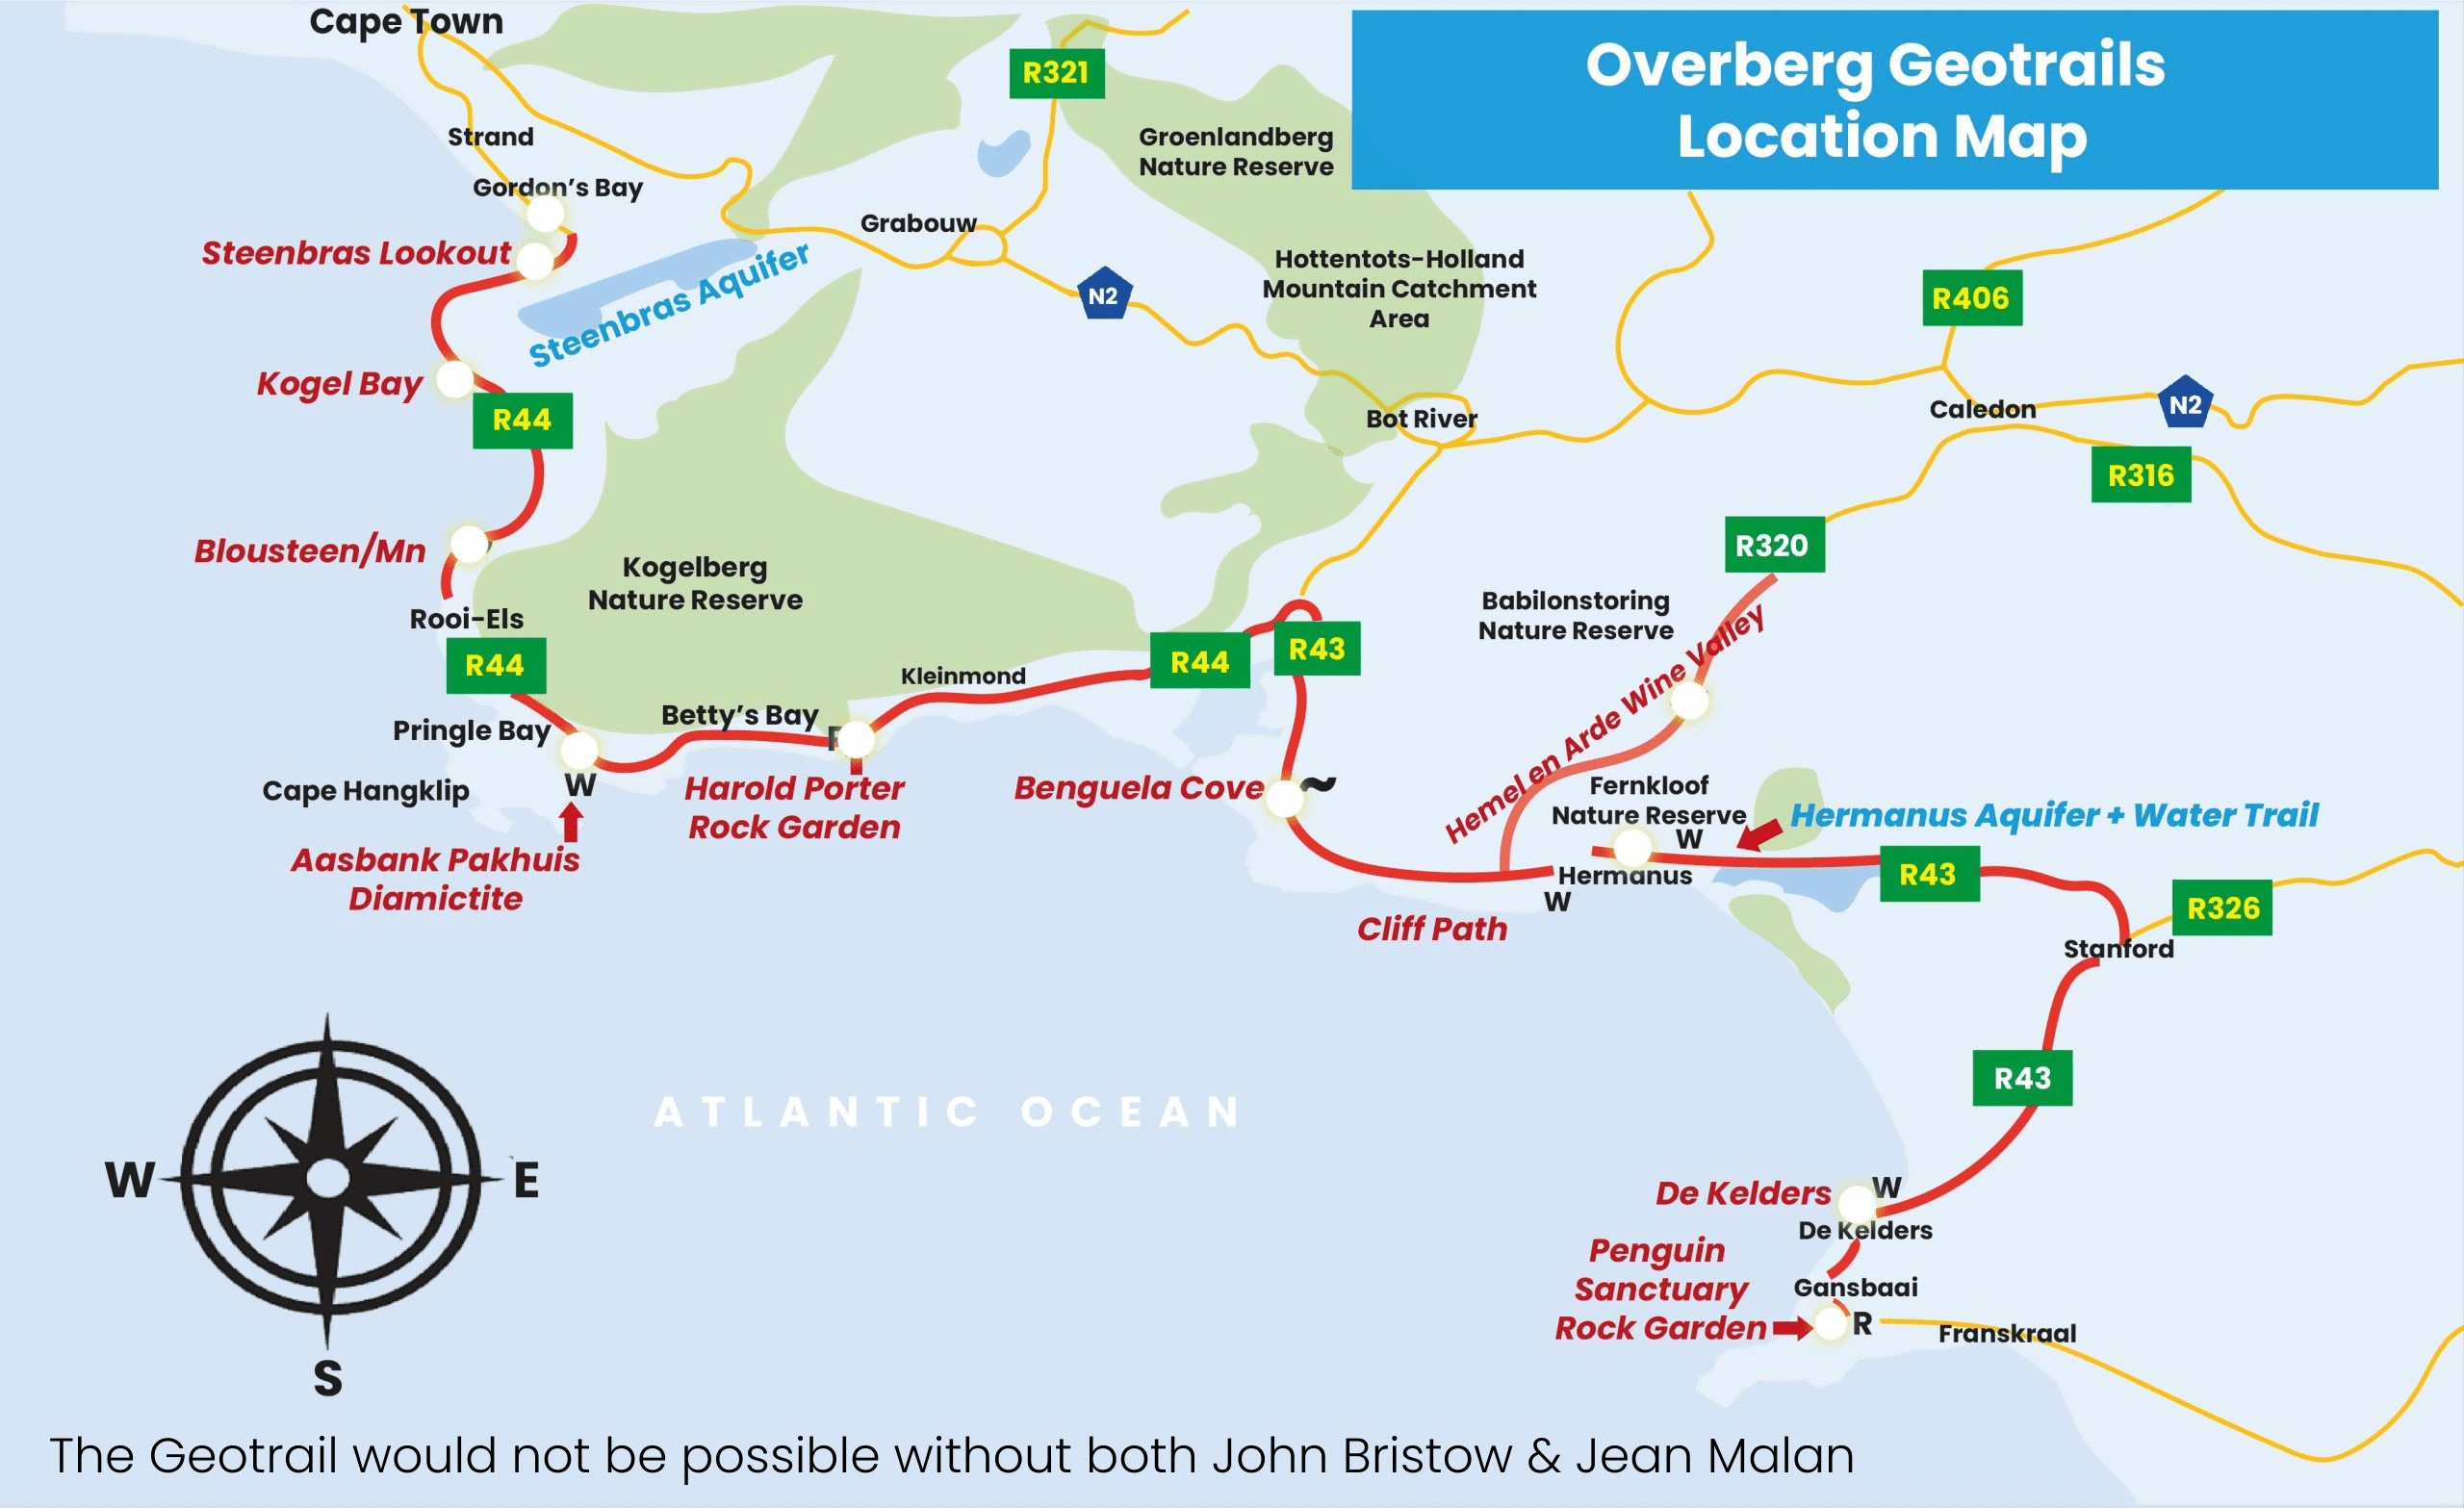 Overberg Geotrail